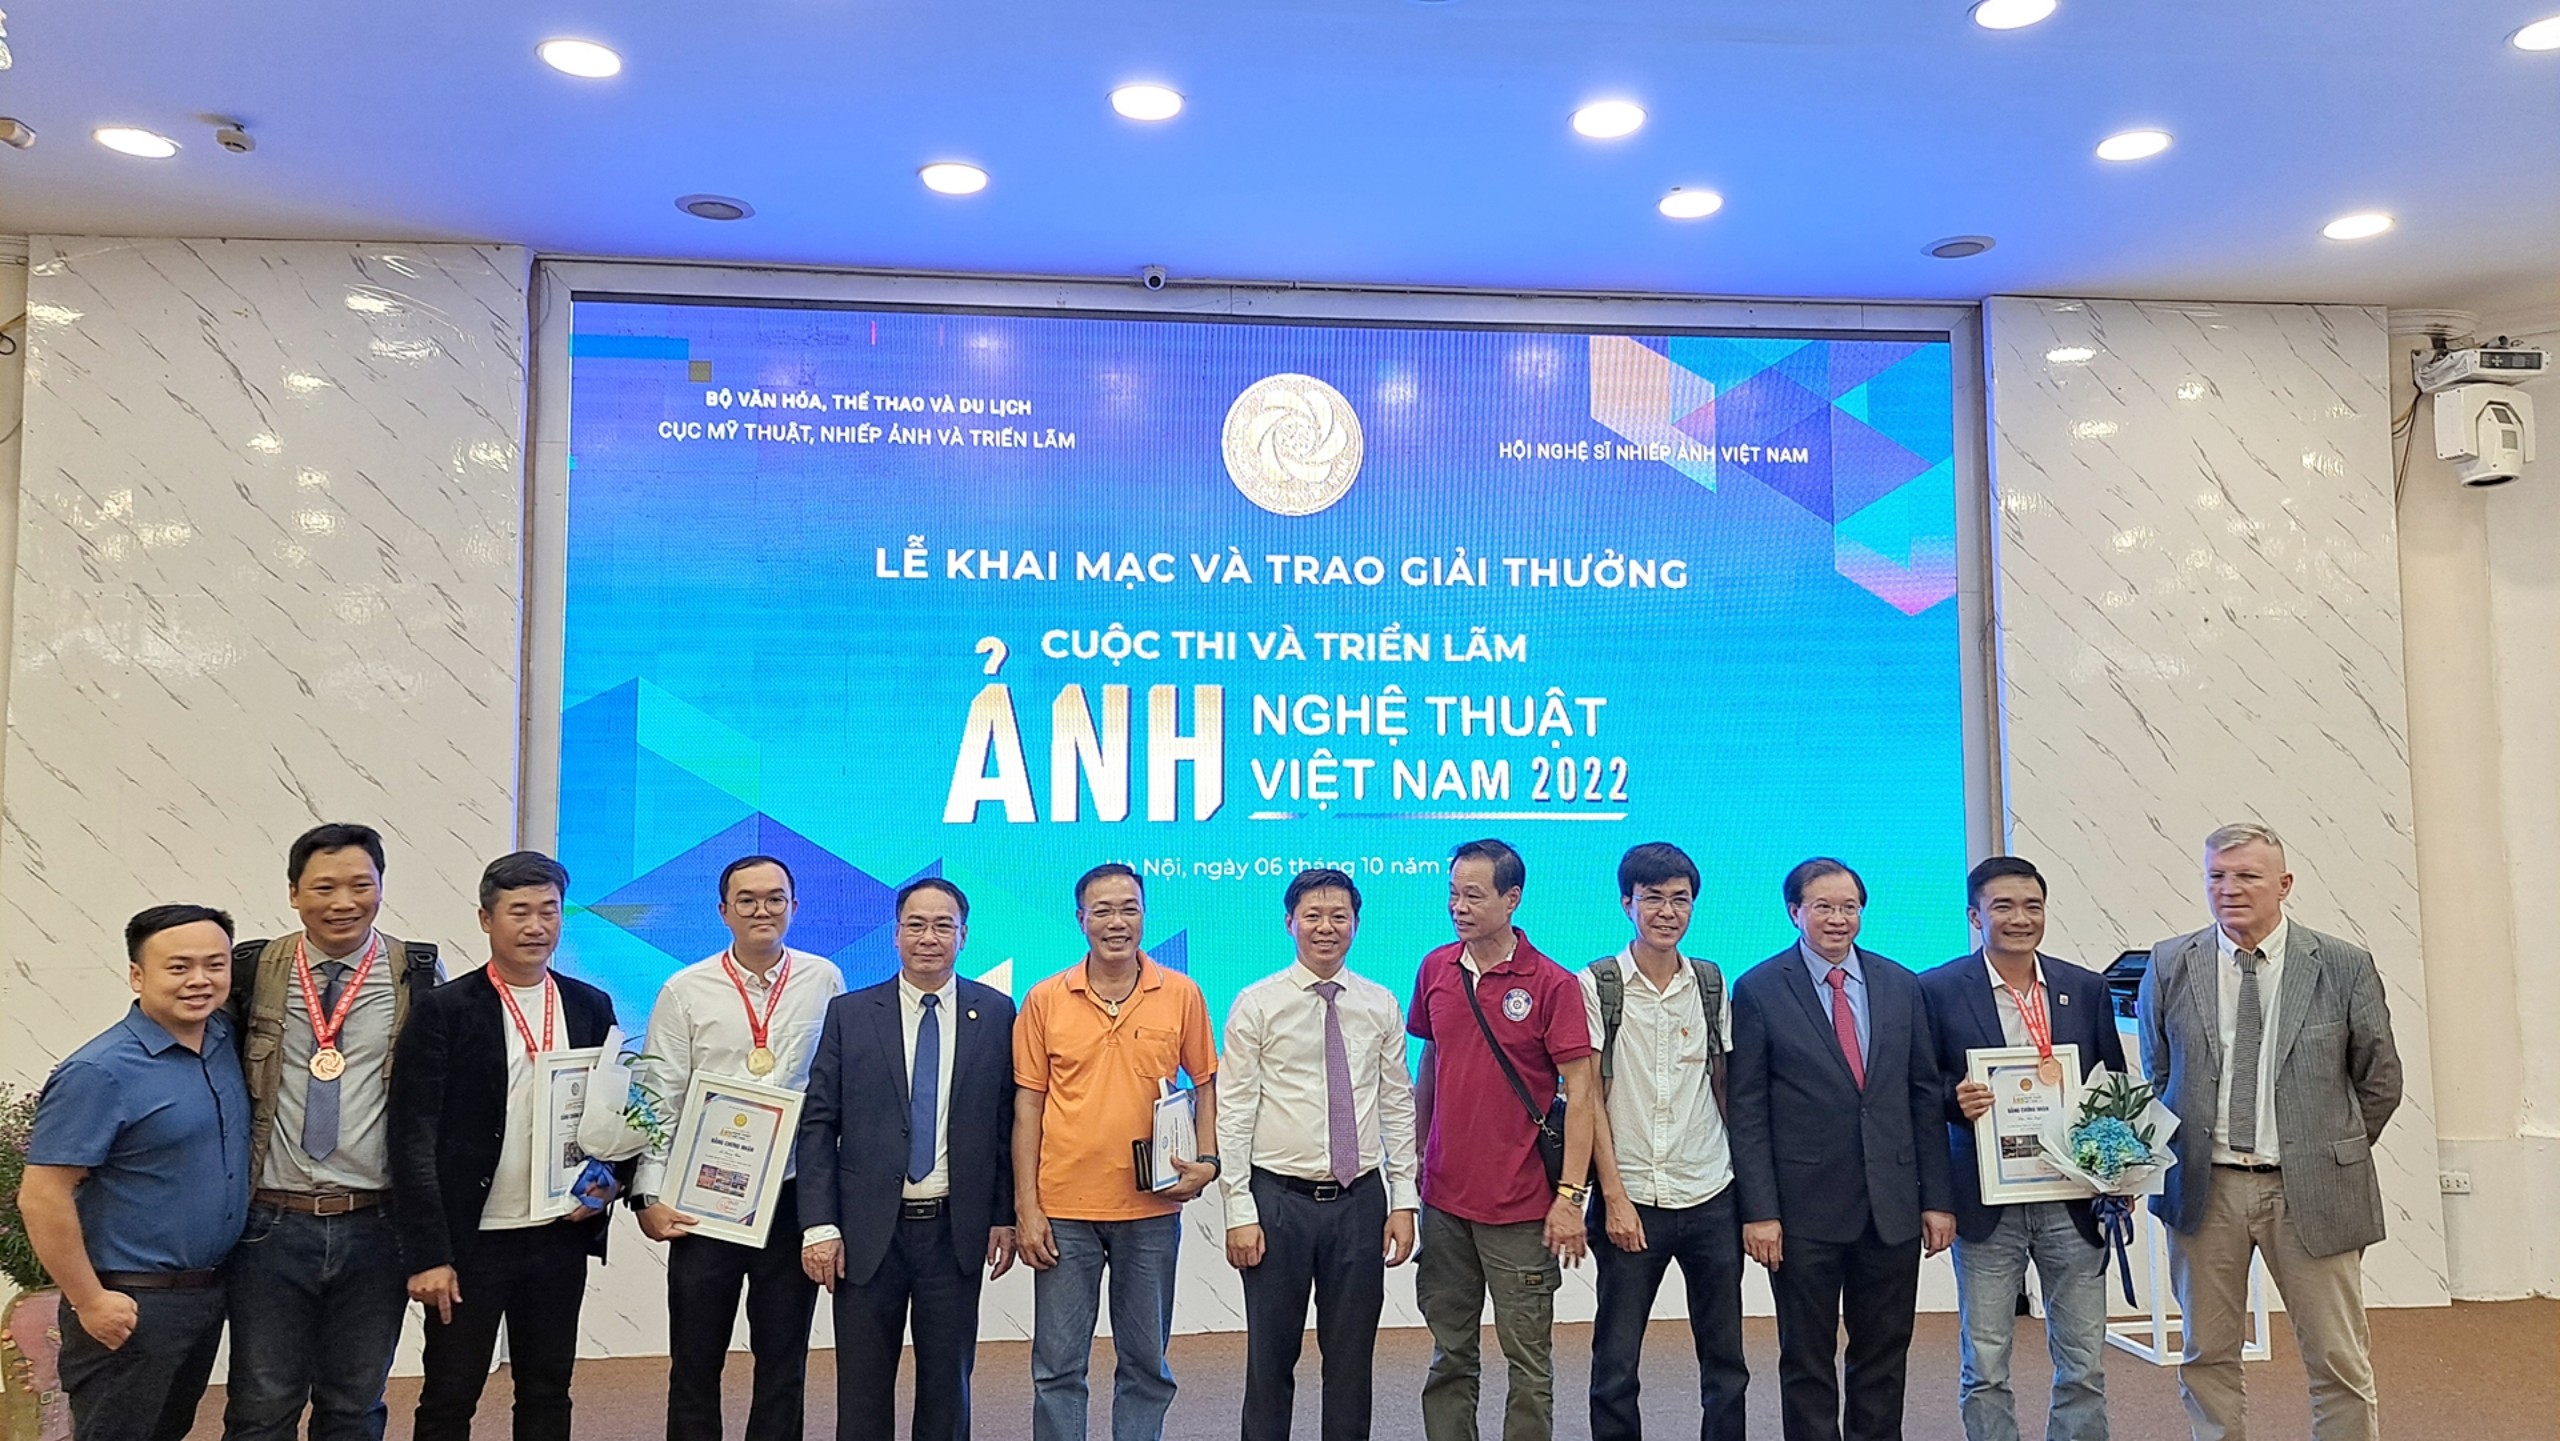 Cuộc thi và Triển lãm Ảnh nghệ thuật Việt Nam năm 2022: Bữa tiệc thị giác đặc sắc - 6